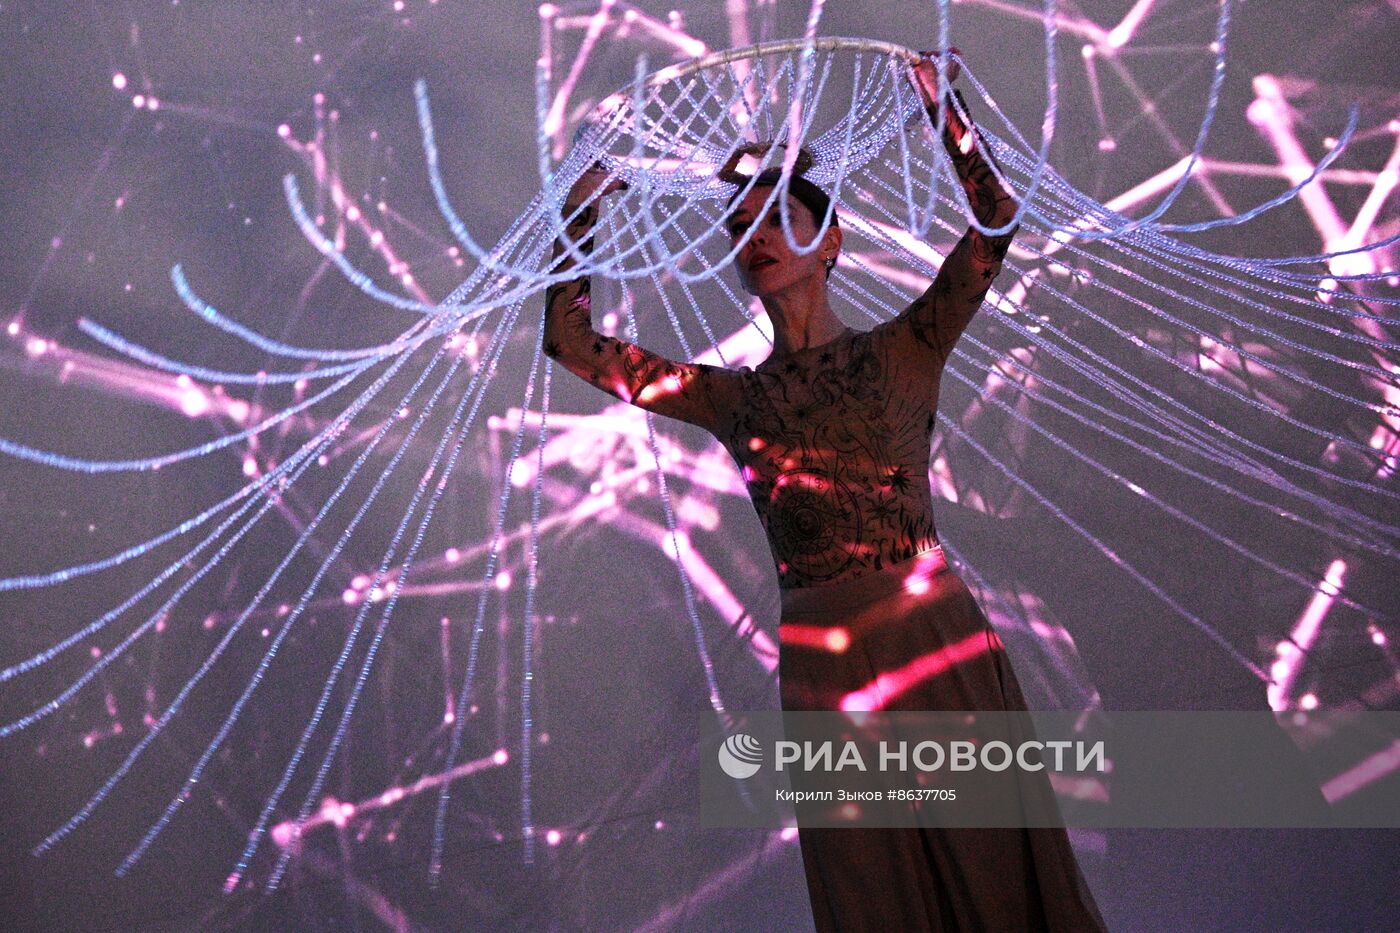 Выставка "Россия". Световое шоу в сопровождении живого оперного пения